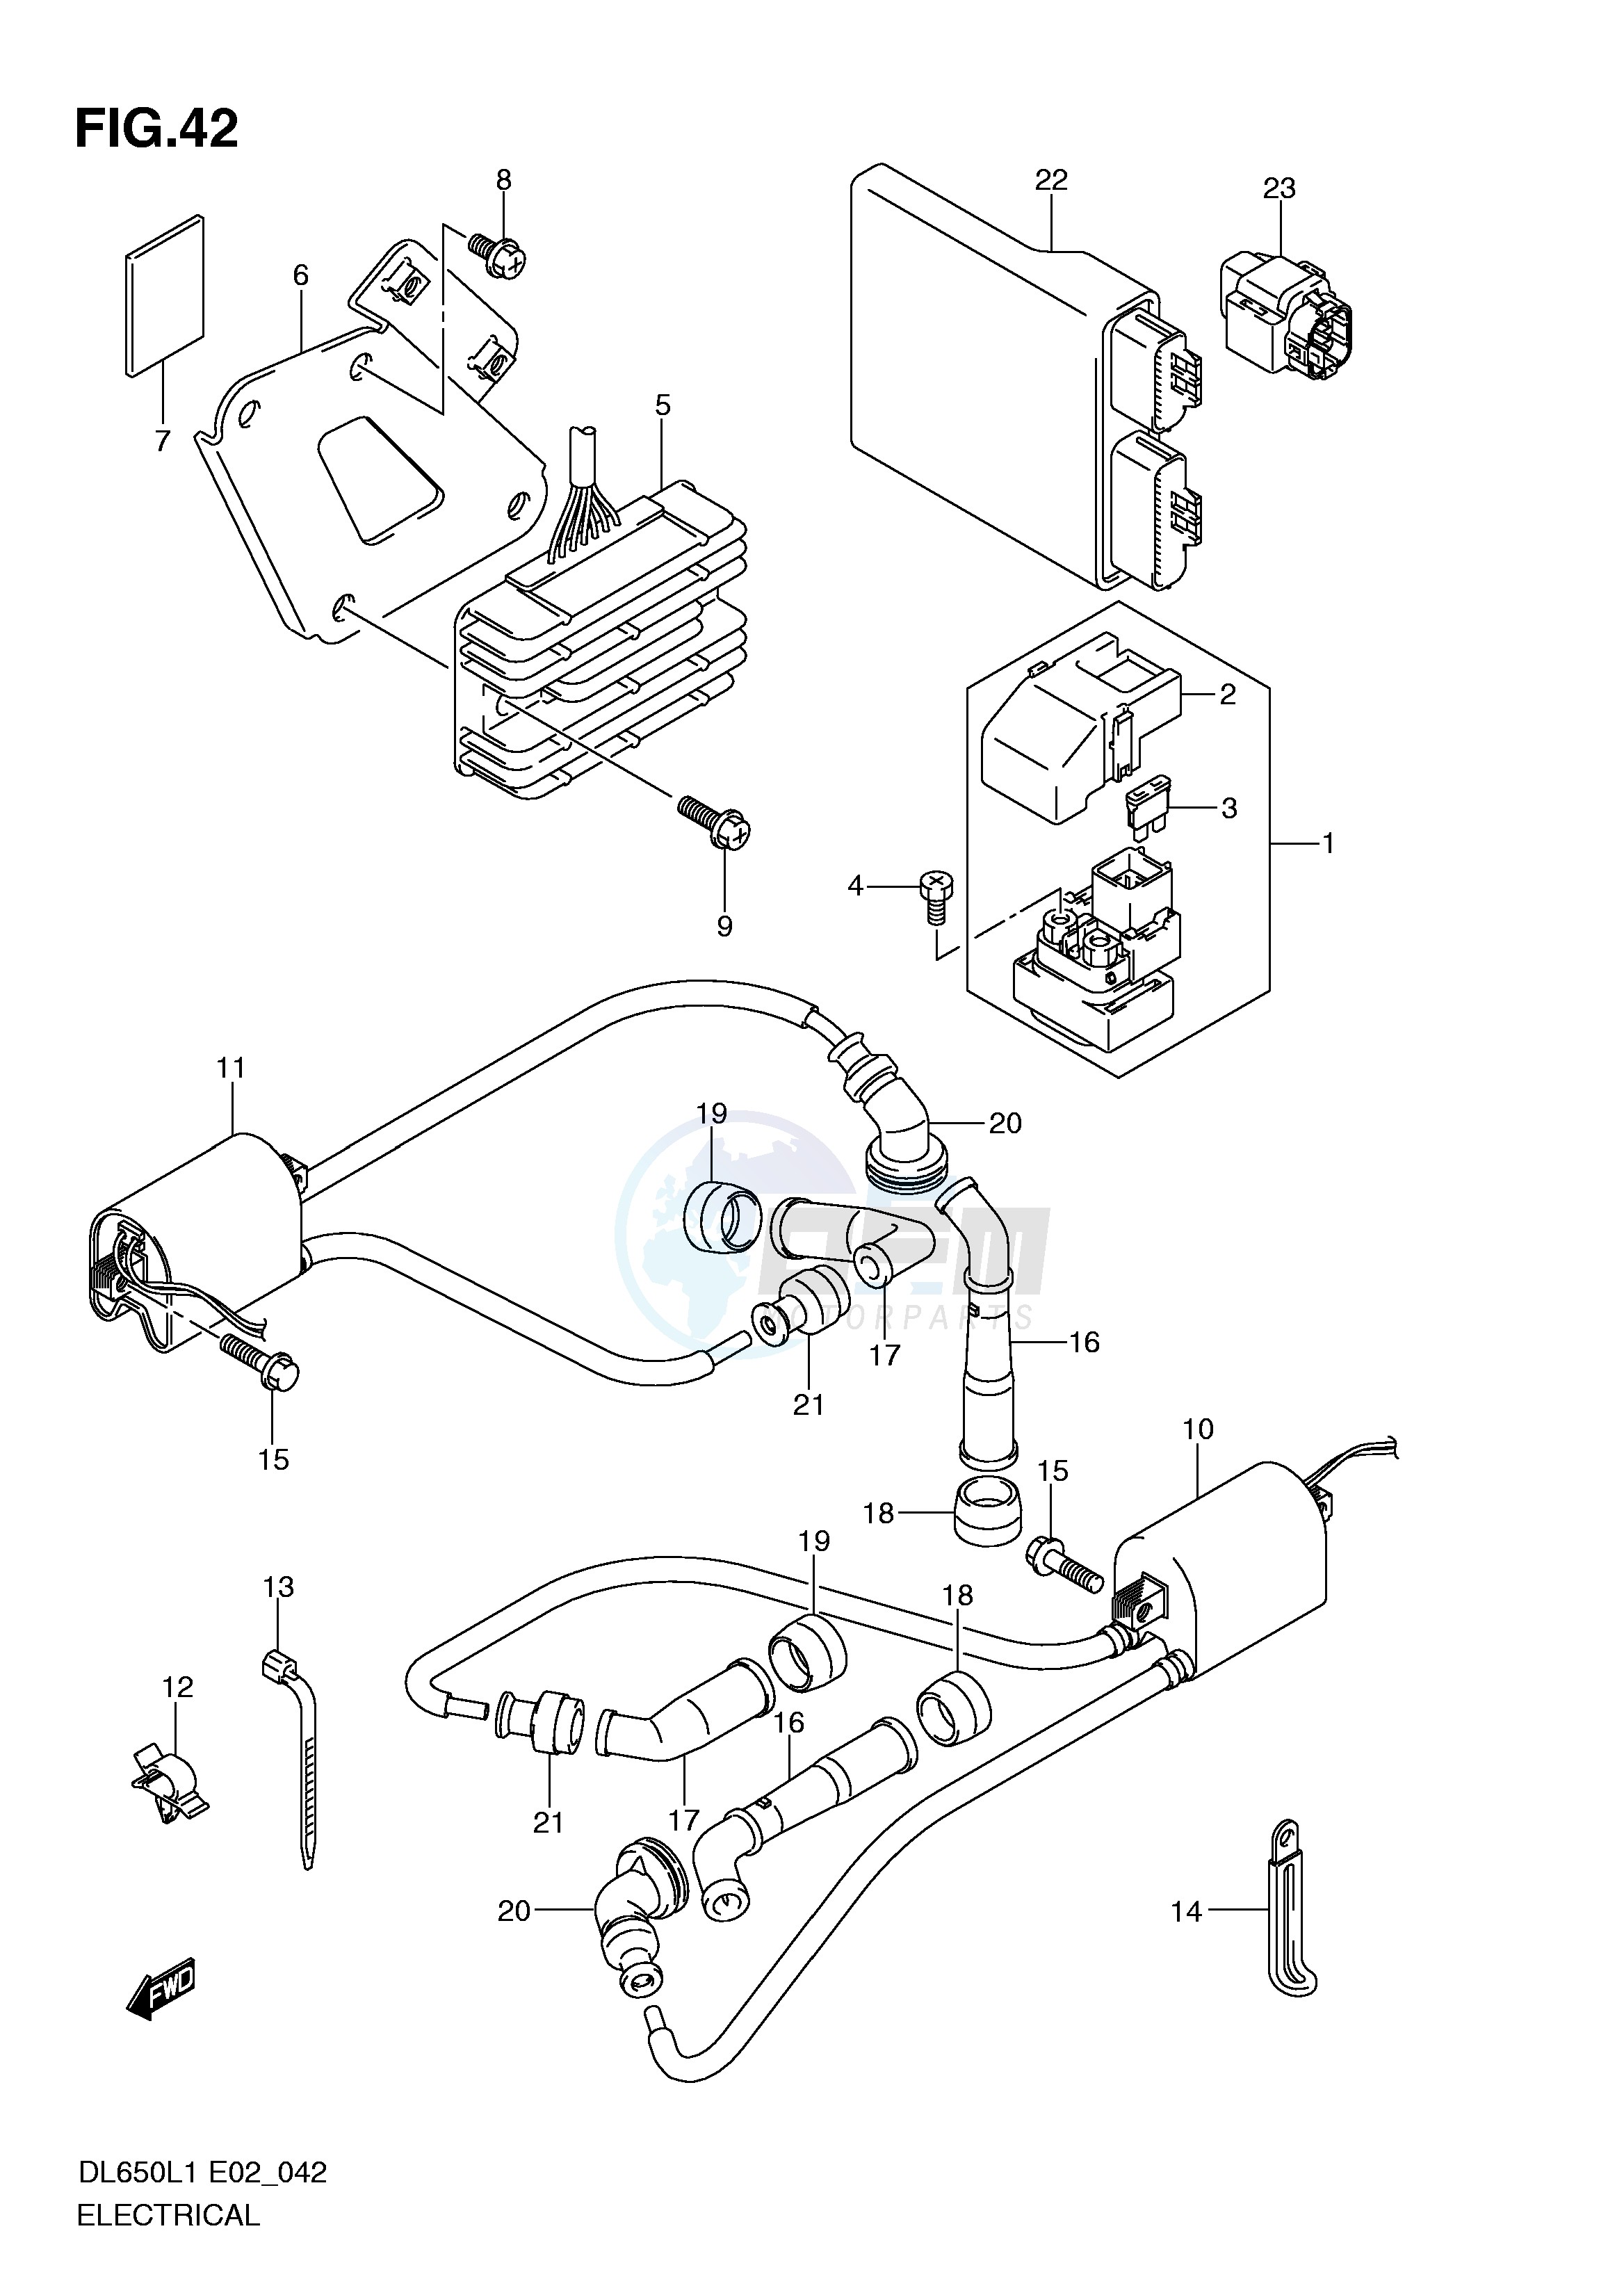 ELECTRICAL (DL650AUEL1 E19) blueprint